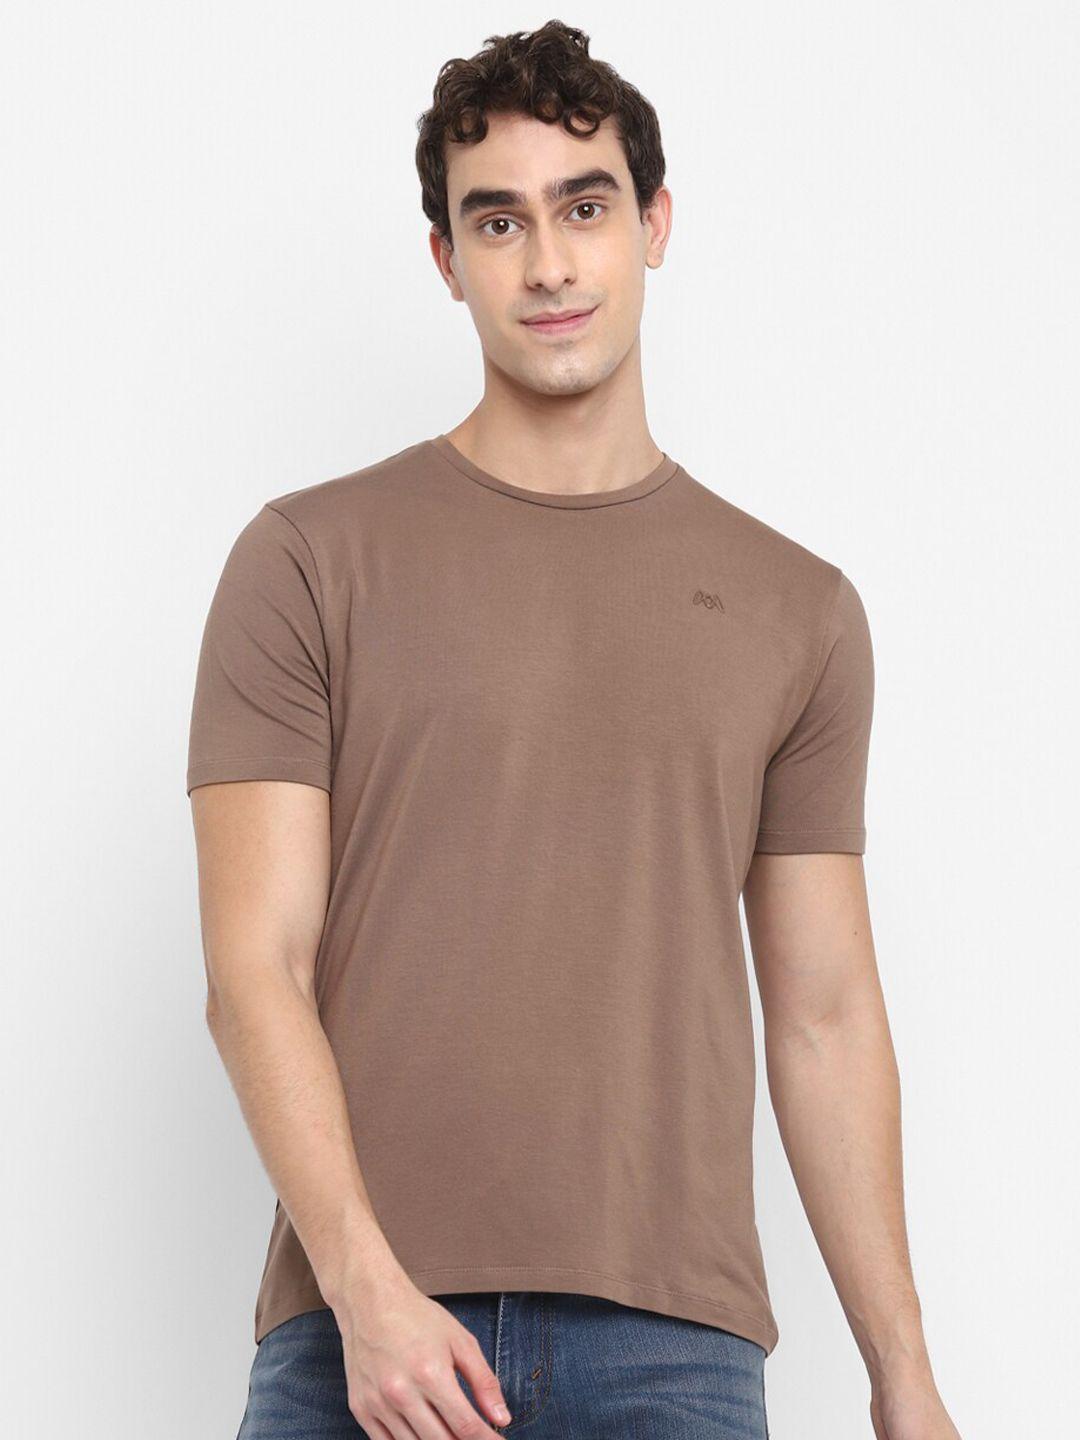 muwin men brown cotton solid t-shirt